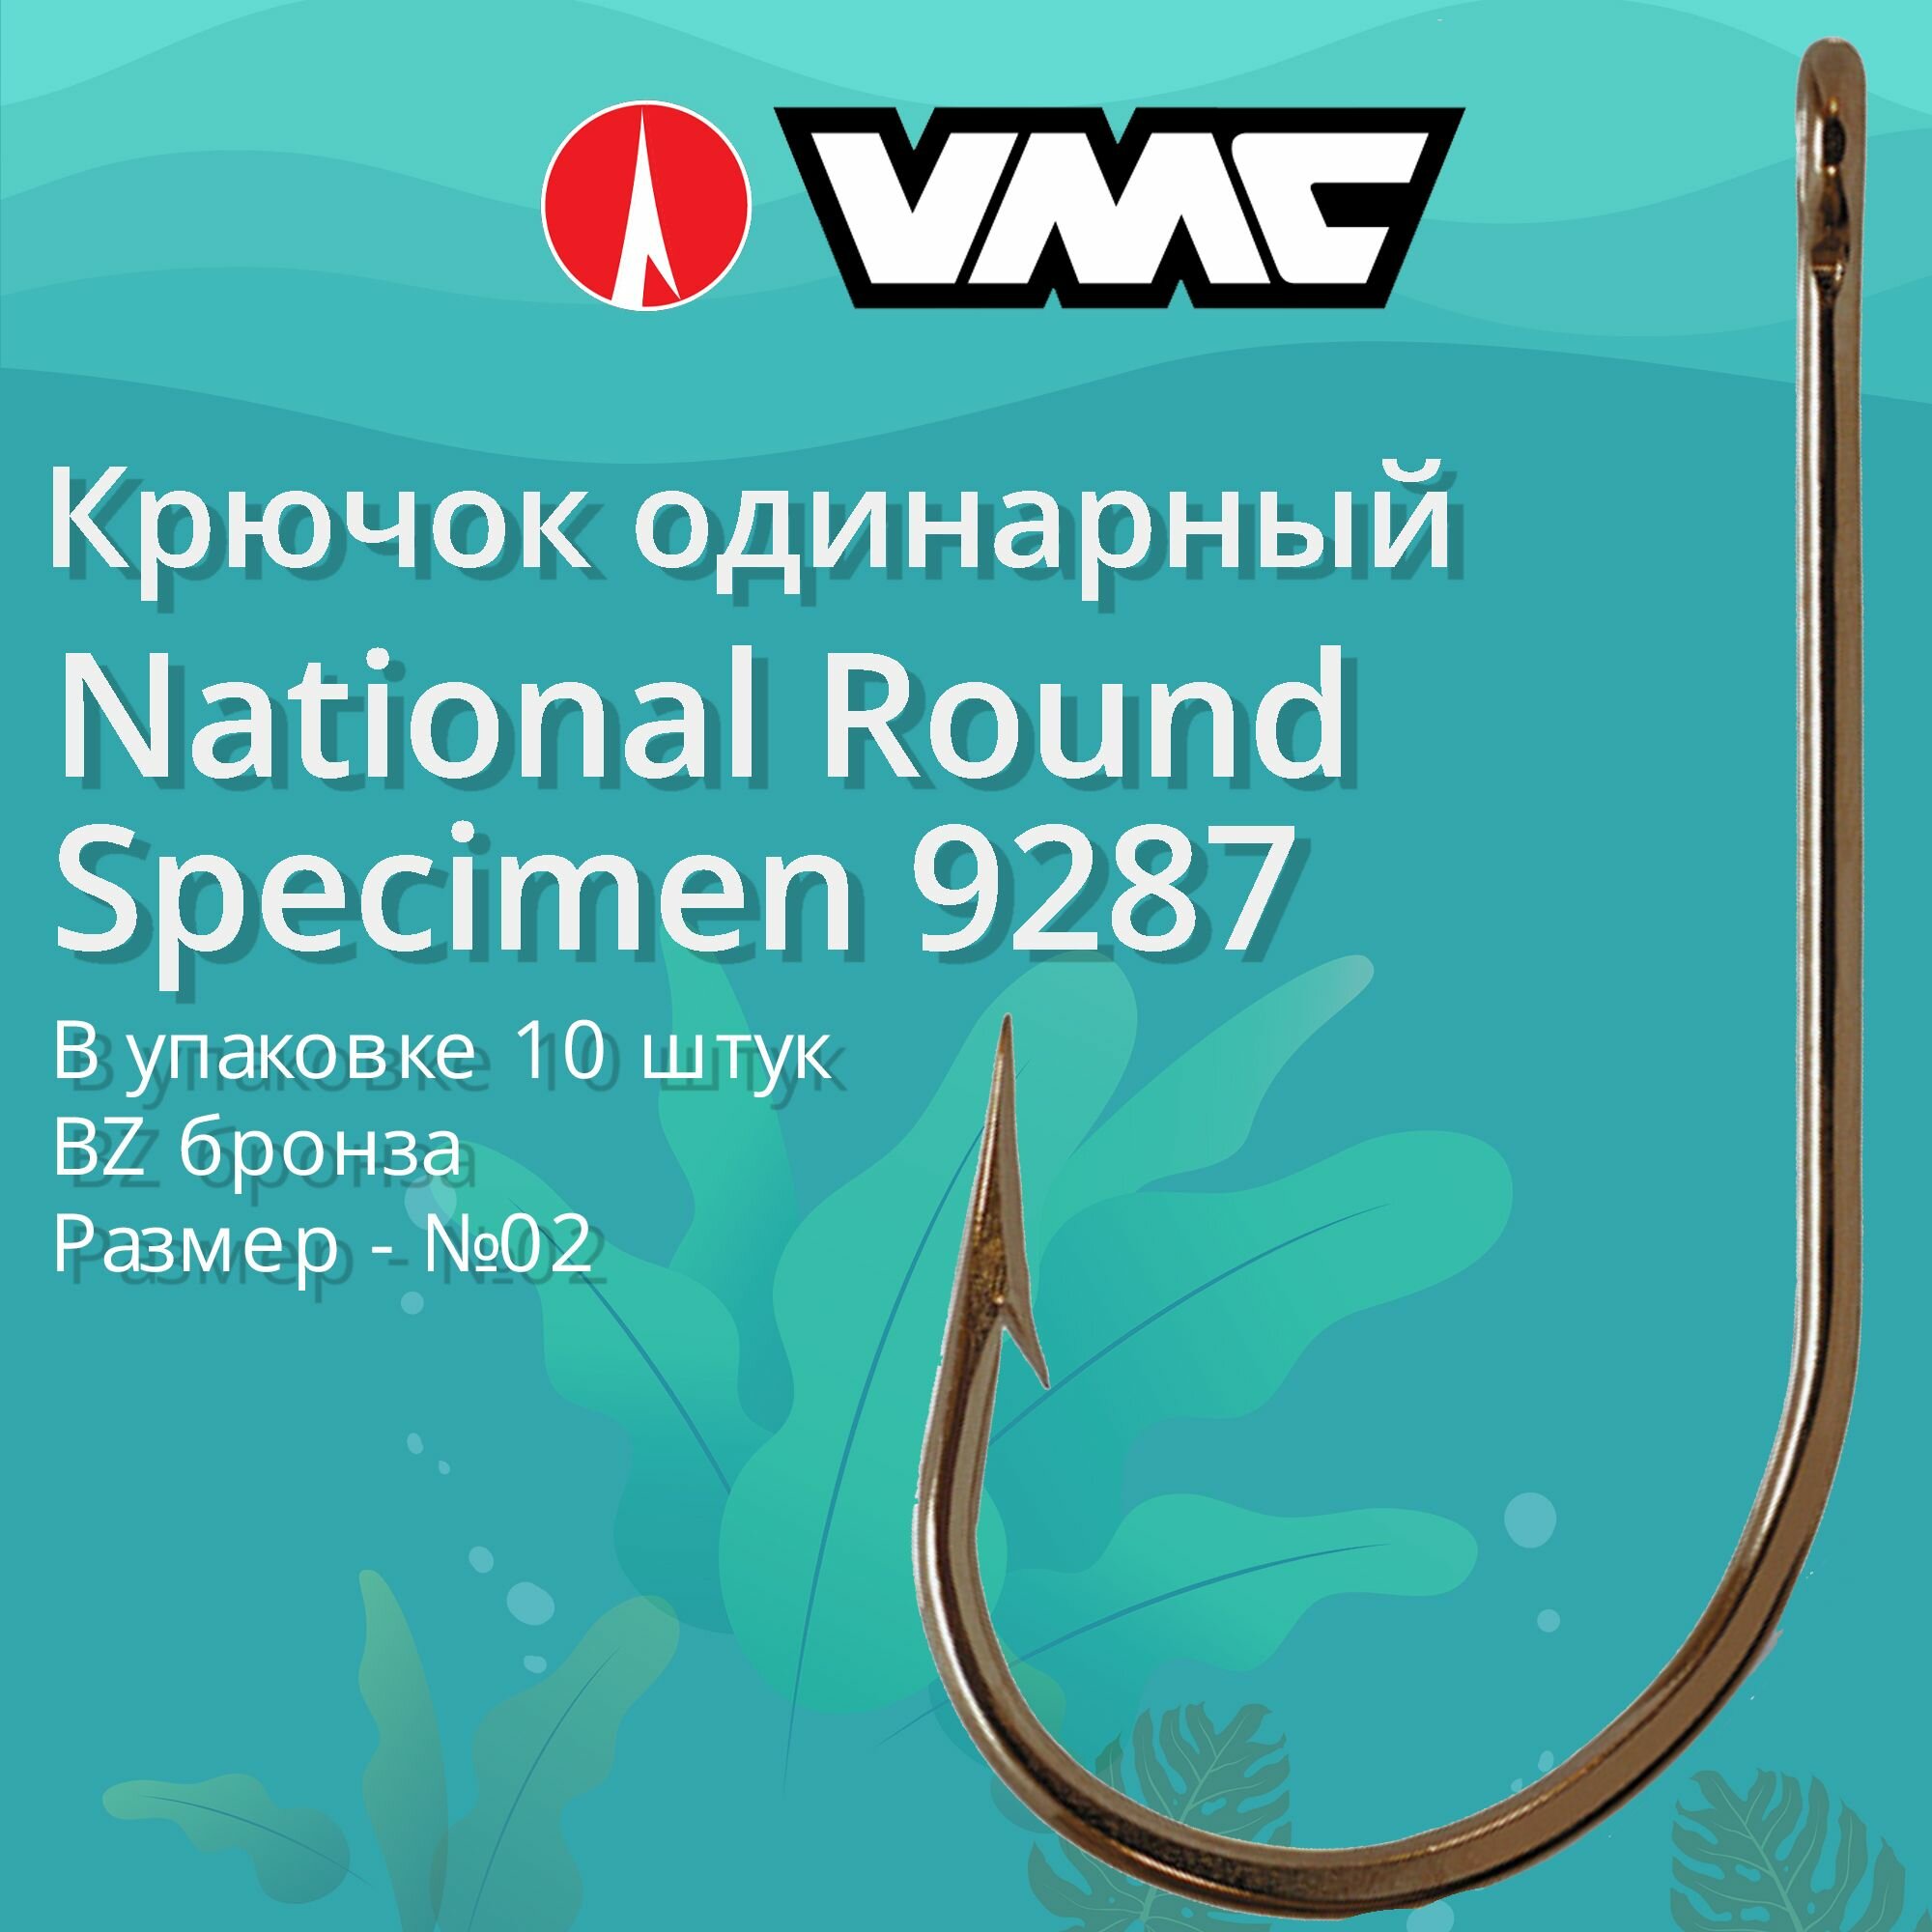 Крючки для рыбалки (одинарный) VMC National Round Specimen 9287 BZ (бронза) №02 упаковка 10 штук